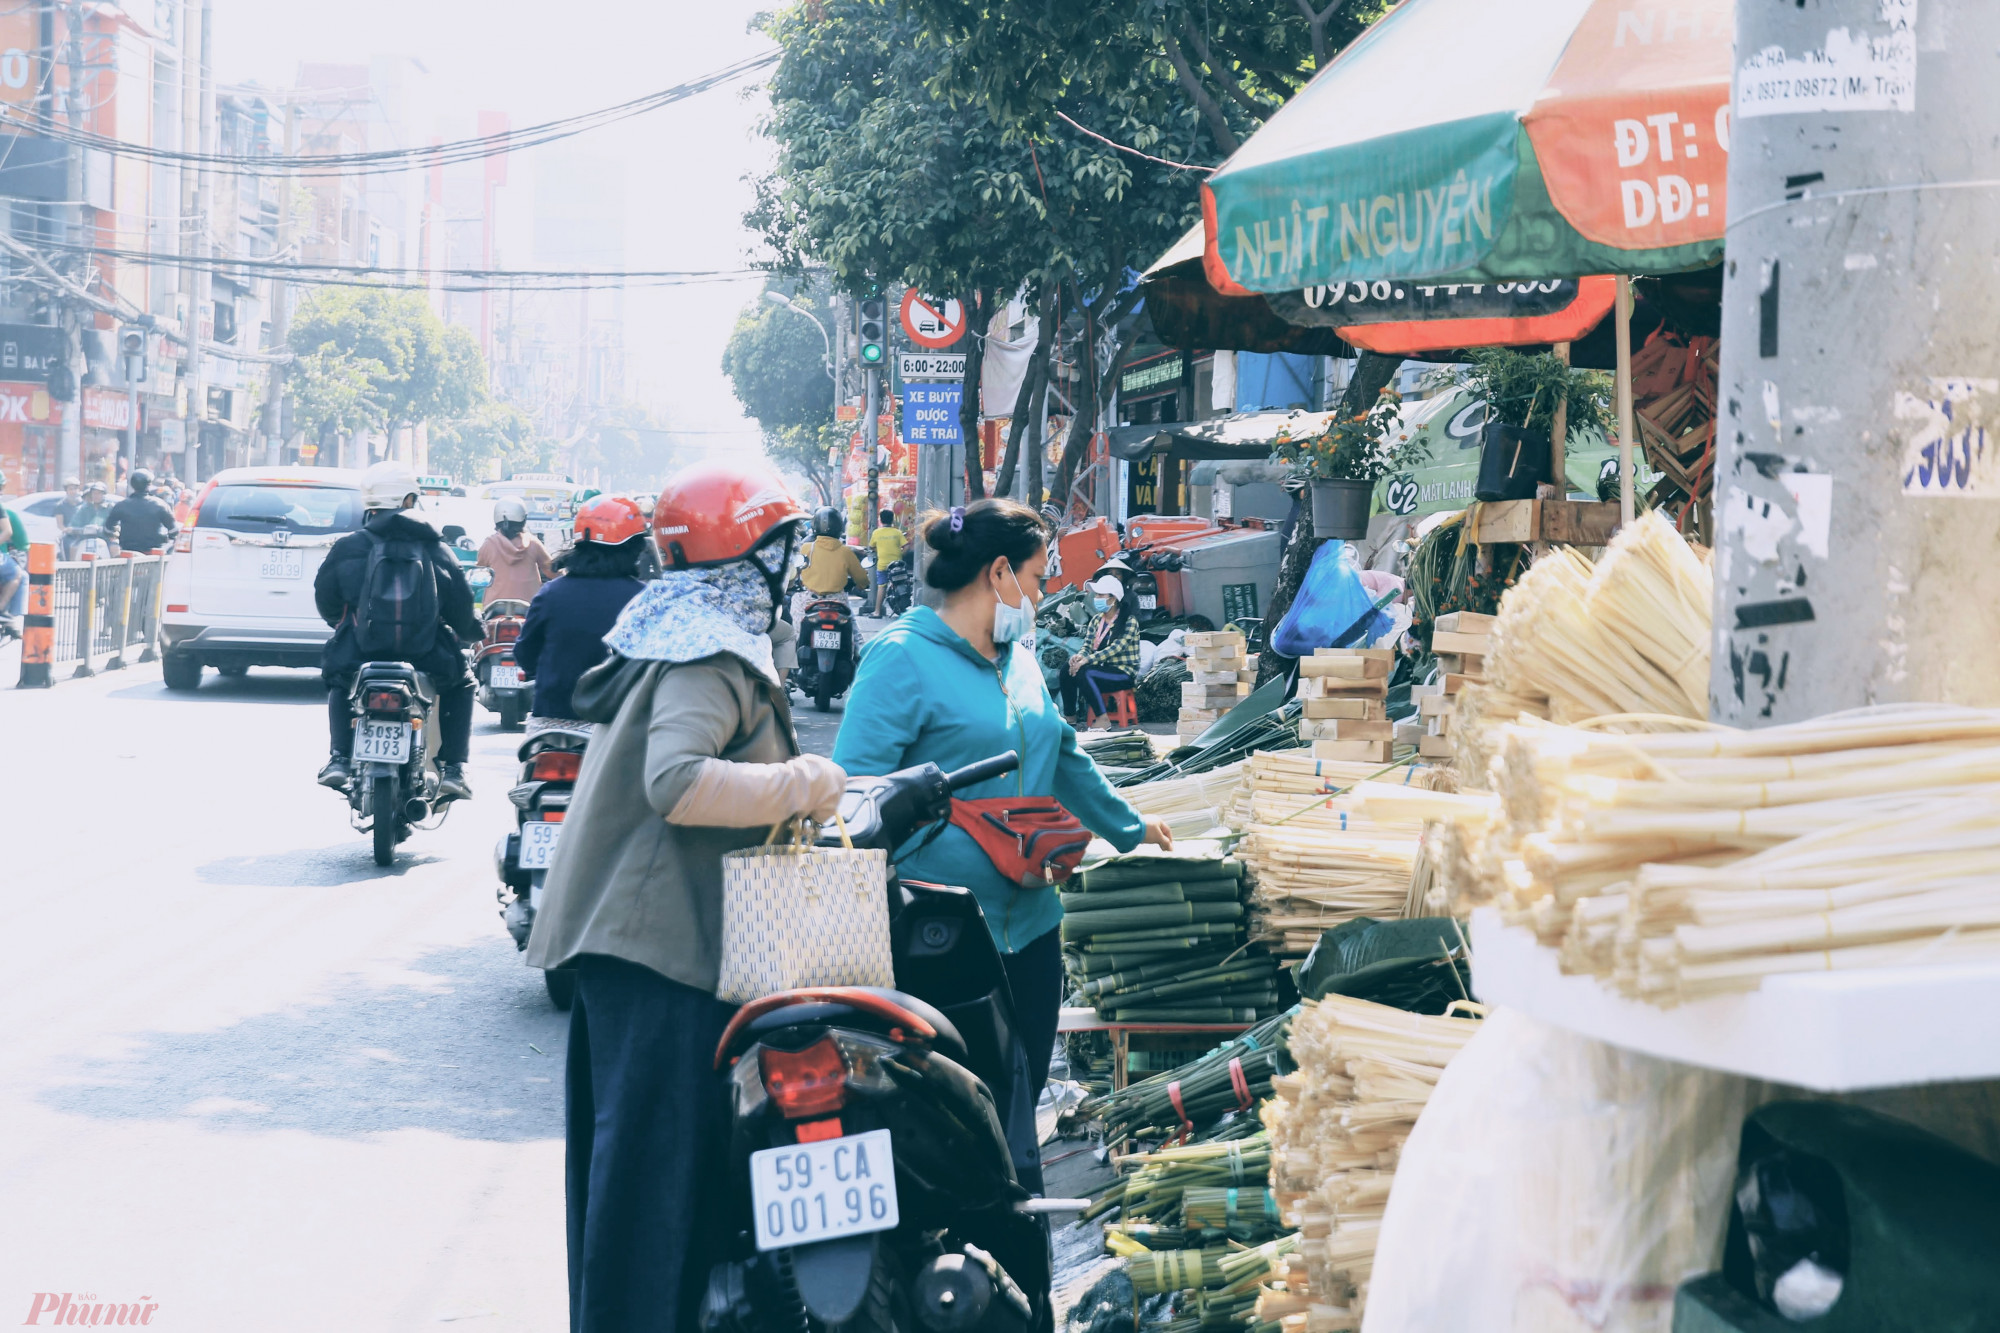 Chợ lá dong Ông Tạ chủ yếu hoạt động từ 10 đến 15 ngày trong năm, từ 18 đến 2